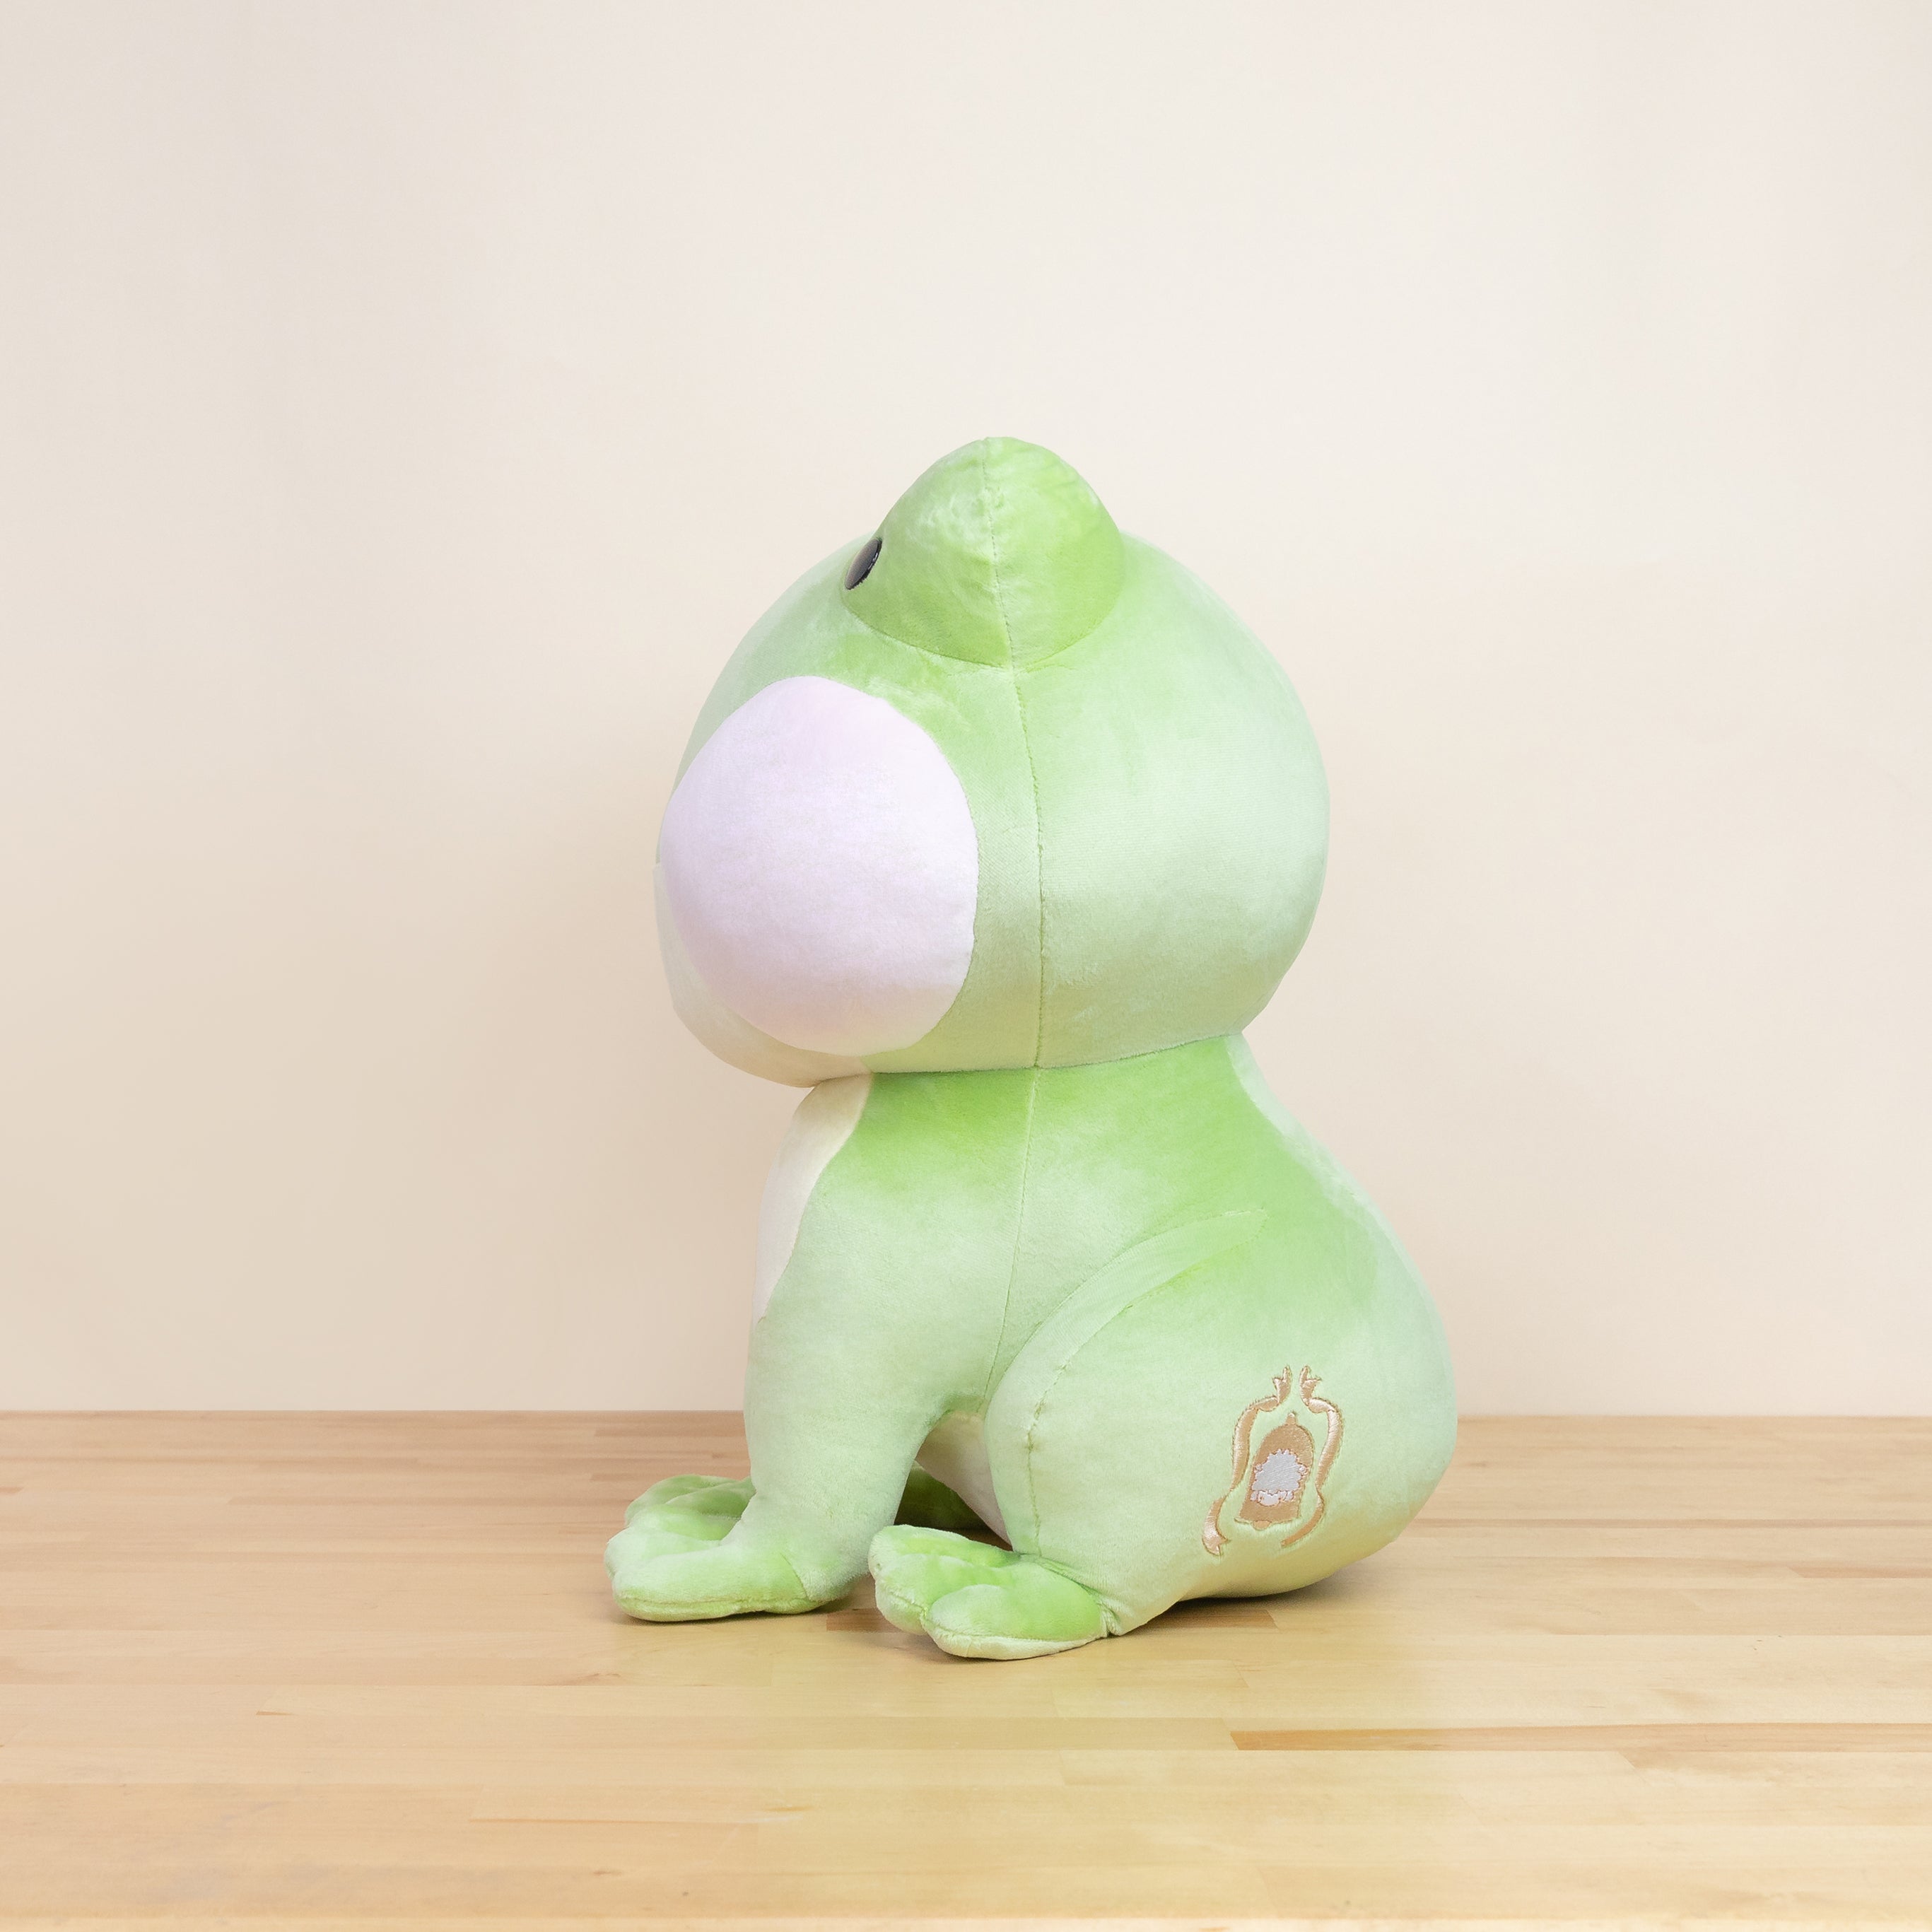 Jumbo Froggi The Frog - Giant Frog Plush | Bellzi Plush Stuffed Animal by Bellzi